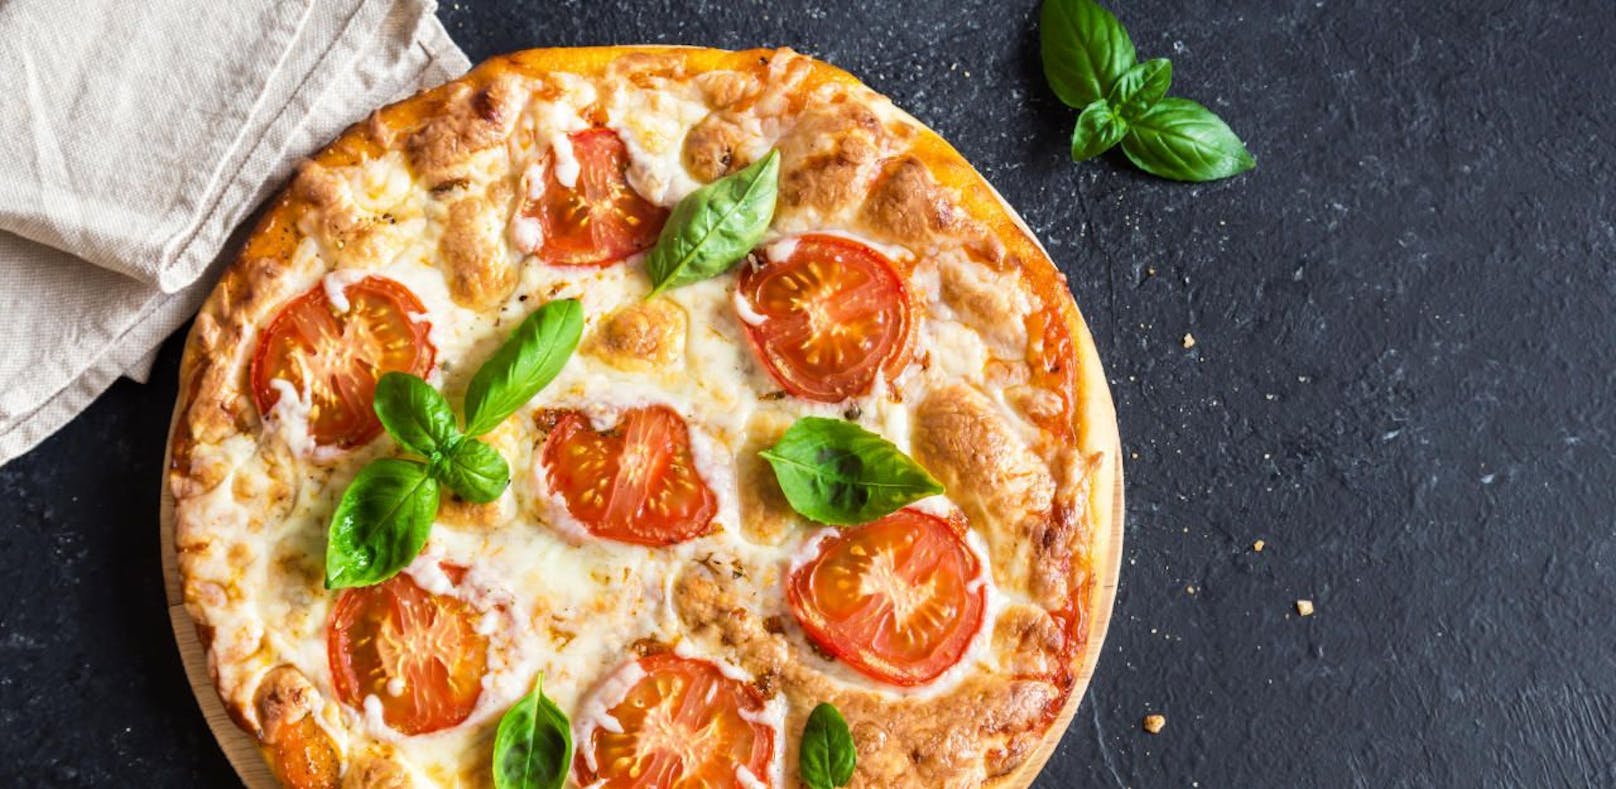 Neapolitanische Pizza ist jetzt Unesco-Kulturerbe